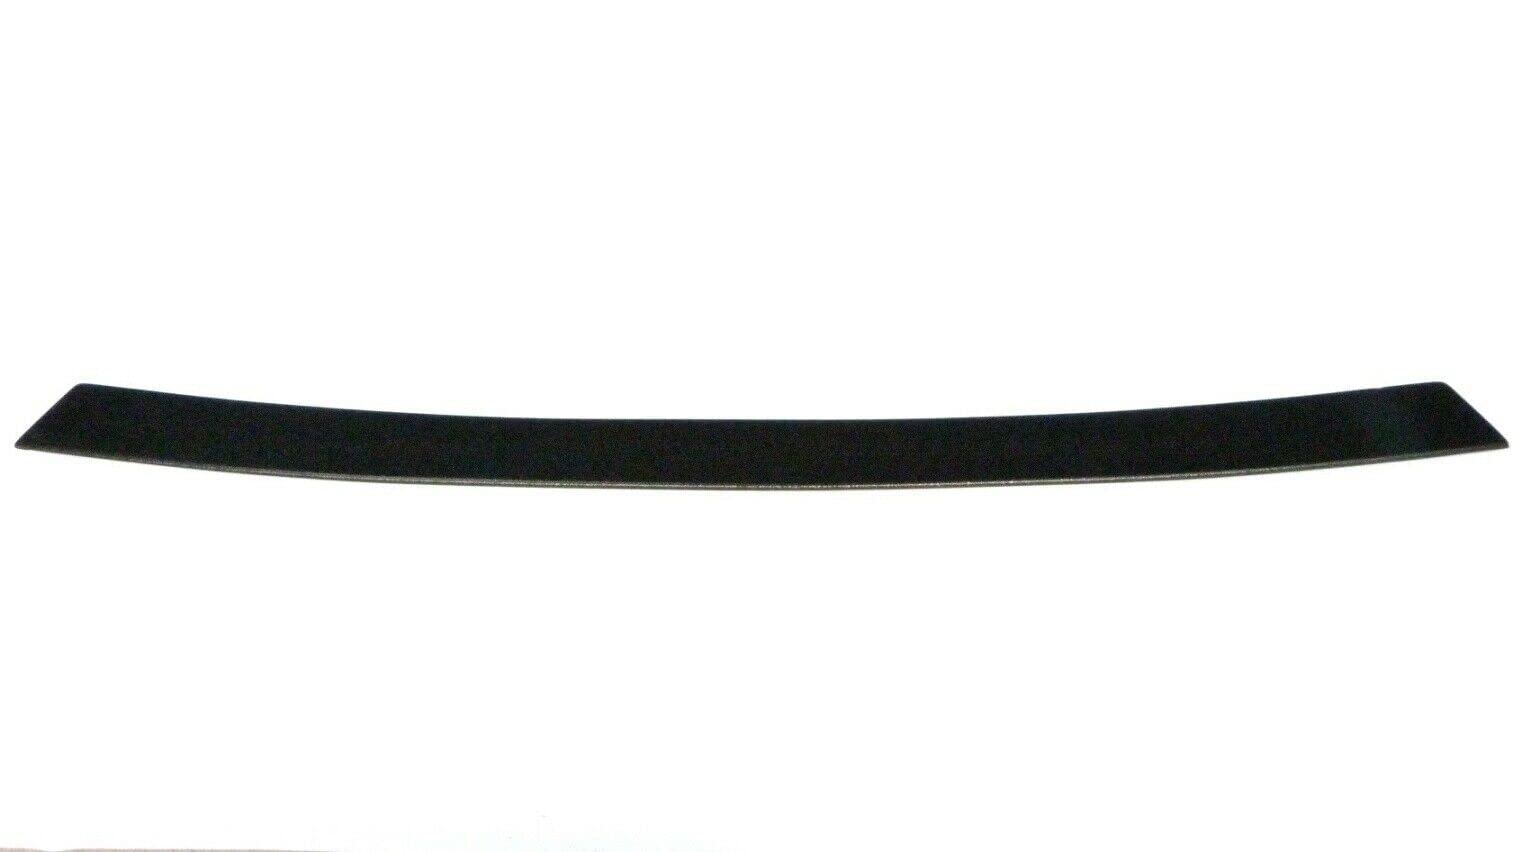 OmniPower® Ladekantenschutz schwarz passend für Hyundai i40 Limousine Typ:VF 2012-2019 von Omnipower